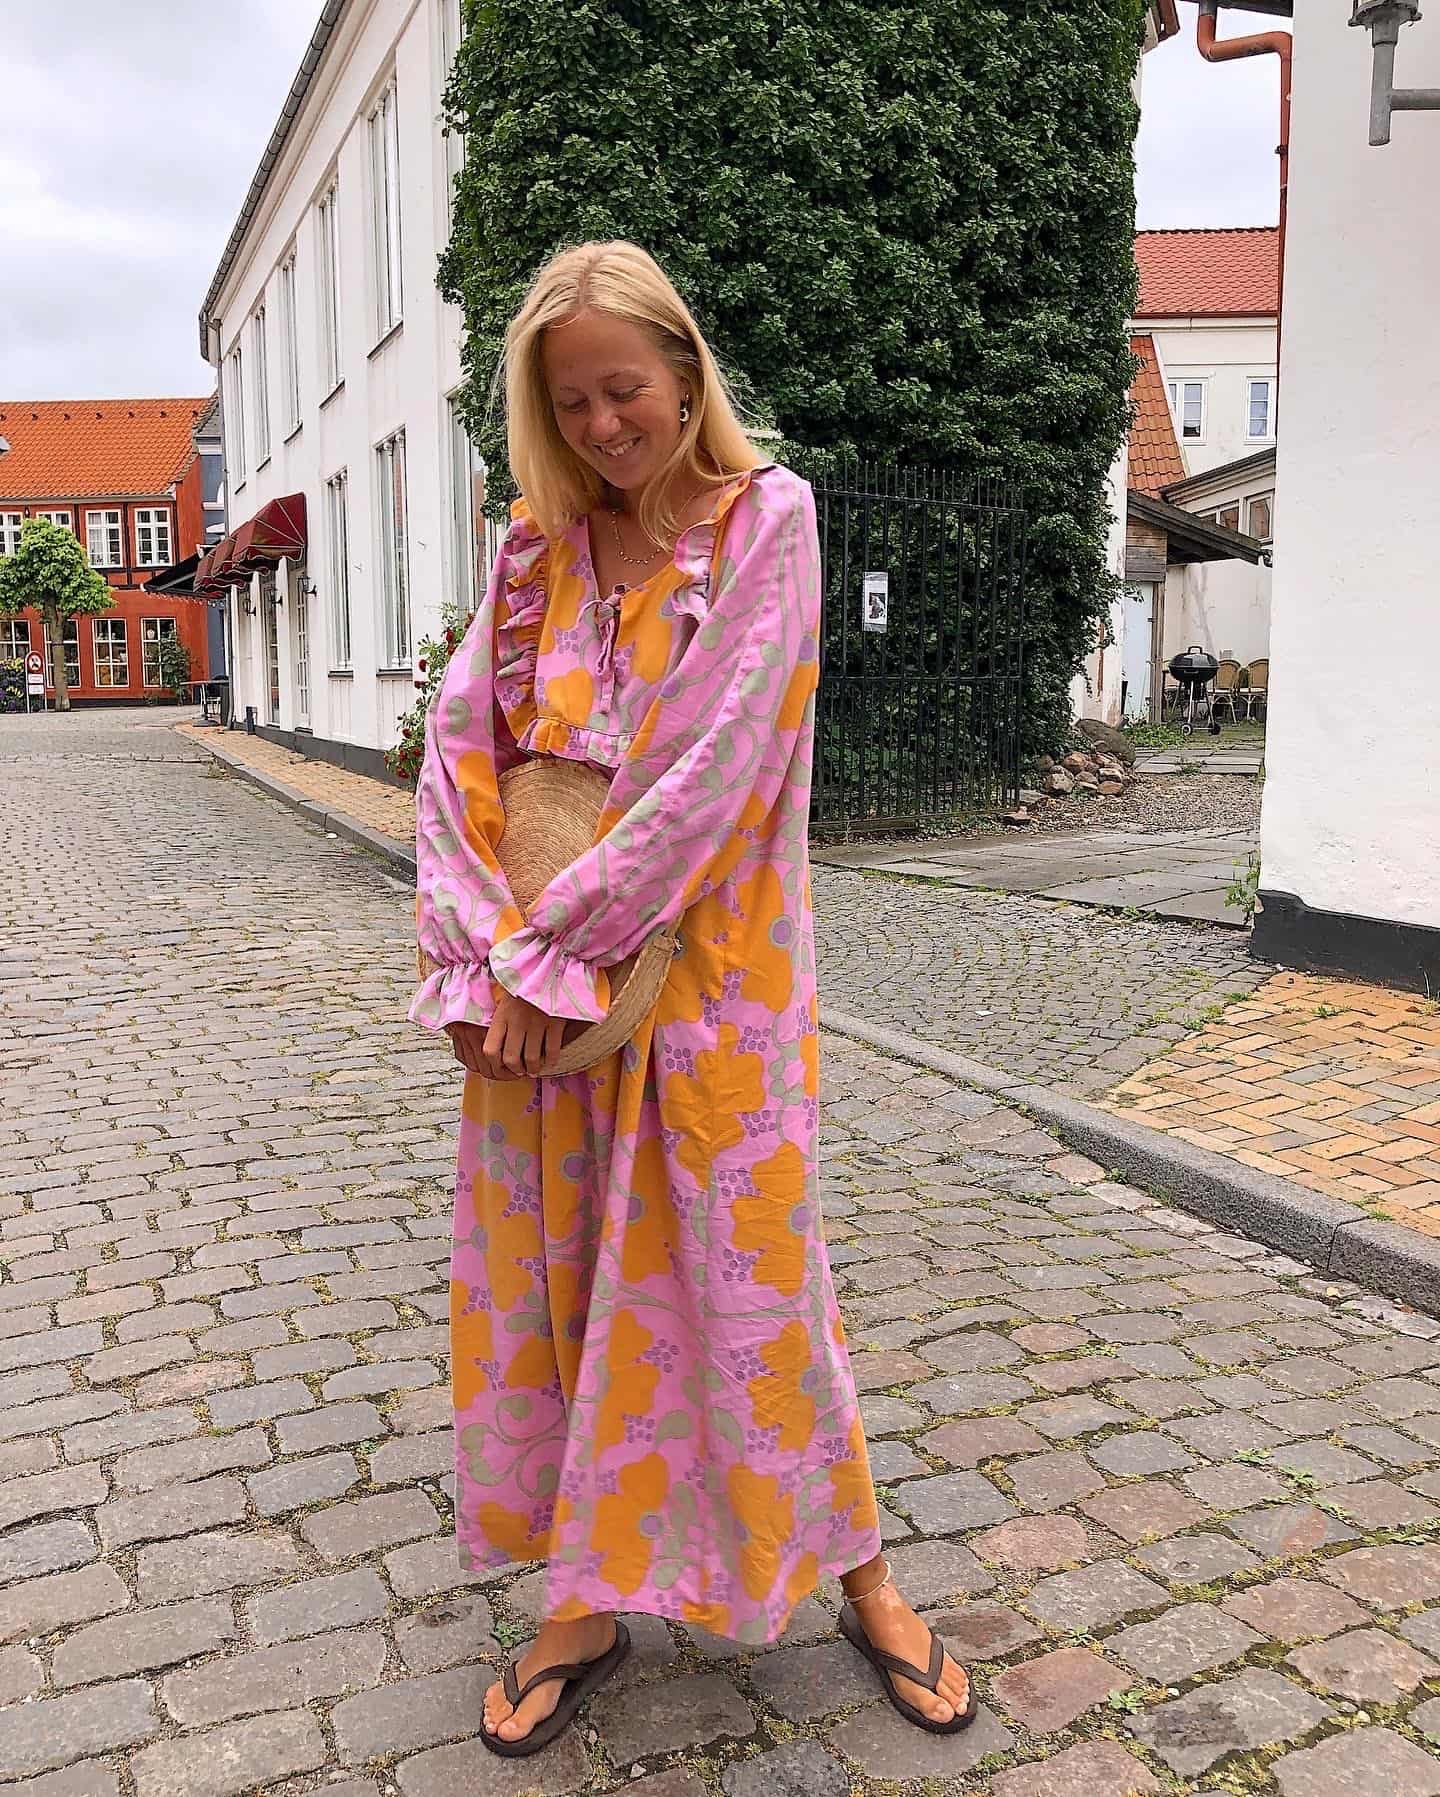 Johanne Kohlmetz fashionable klæder af gammelt sengetøj | faa.dk